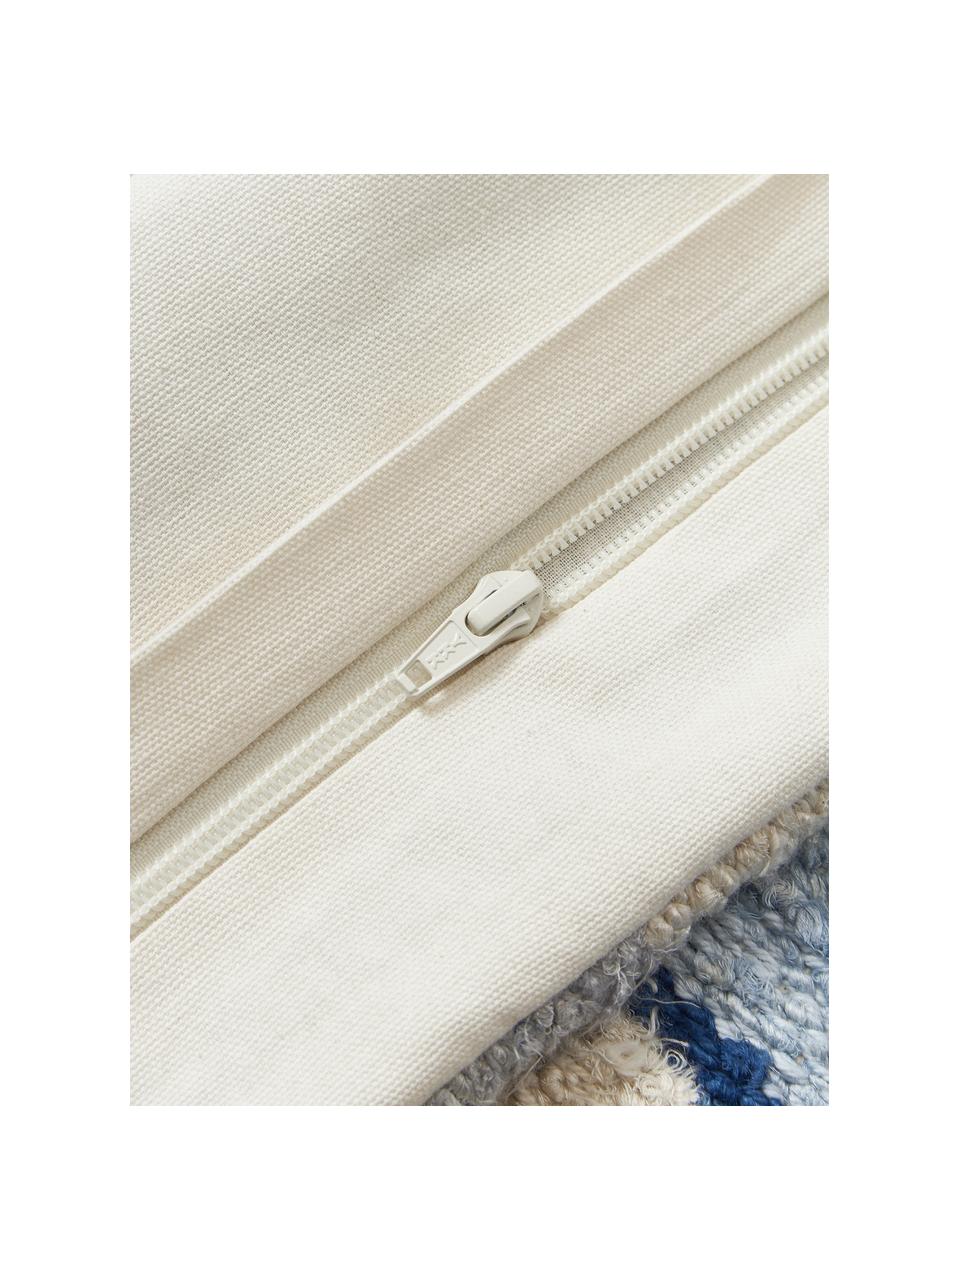 Housse de coussin à motif abstrait Jasper, Bleu, beige, larg. 45 x long. 45 cm